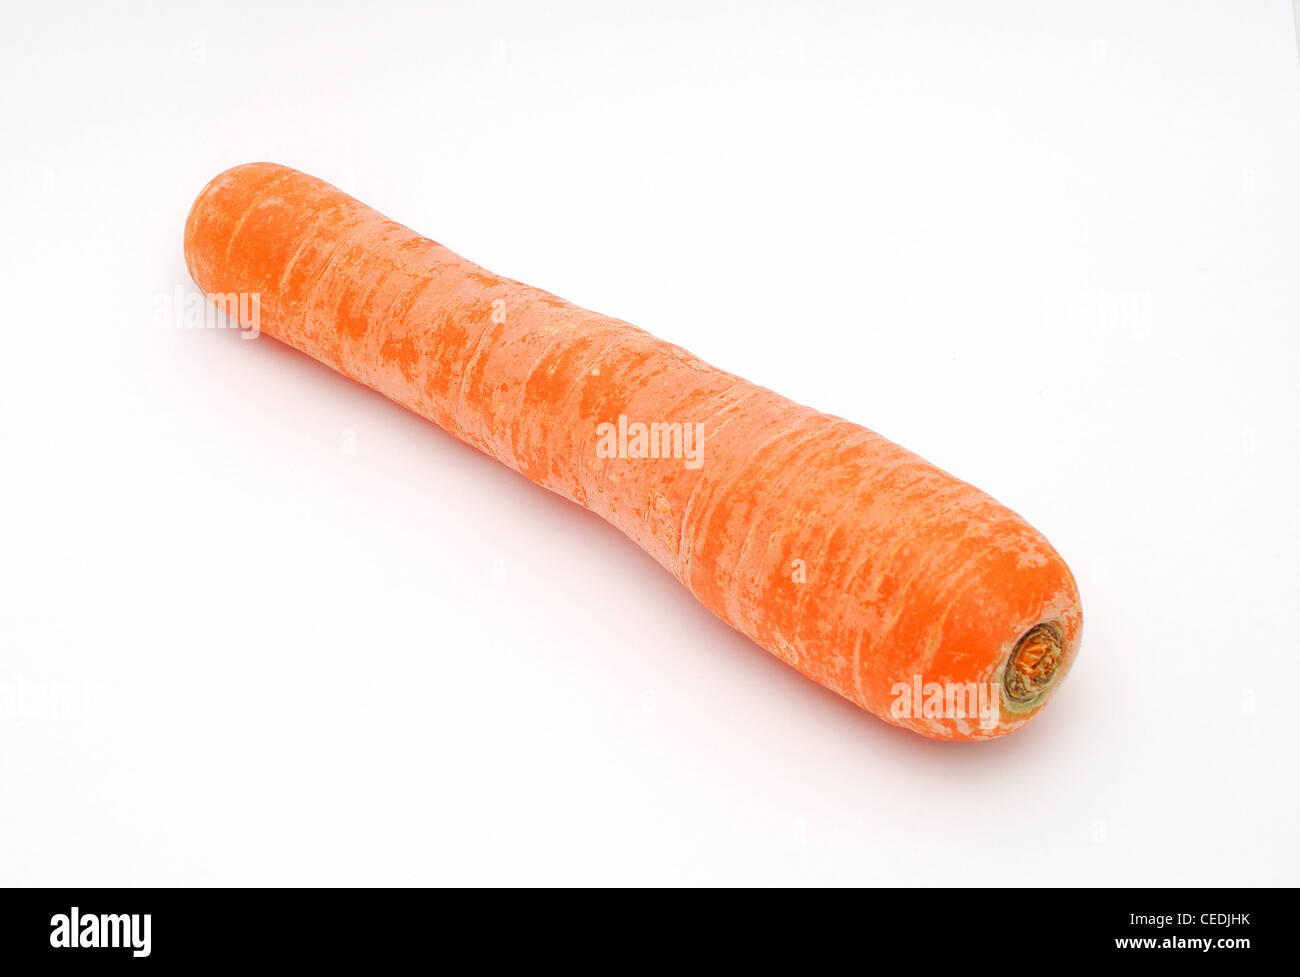 Dettaglio immagine di uno sporco carota sullo sfondo bianco. Foto Stock